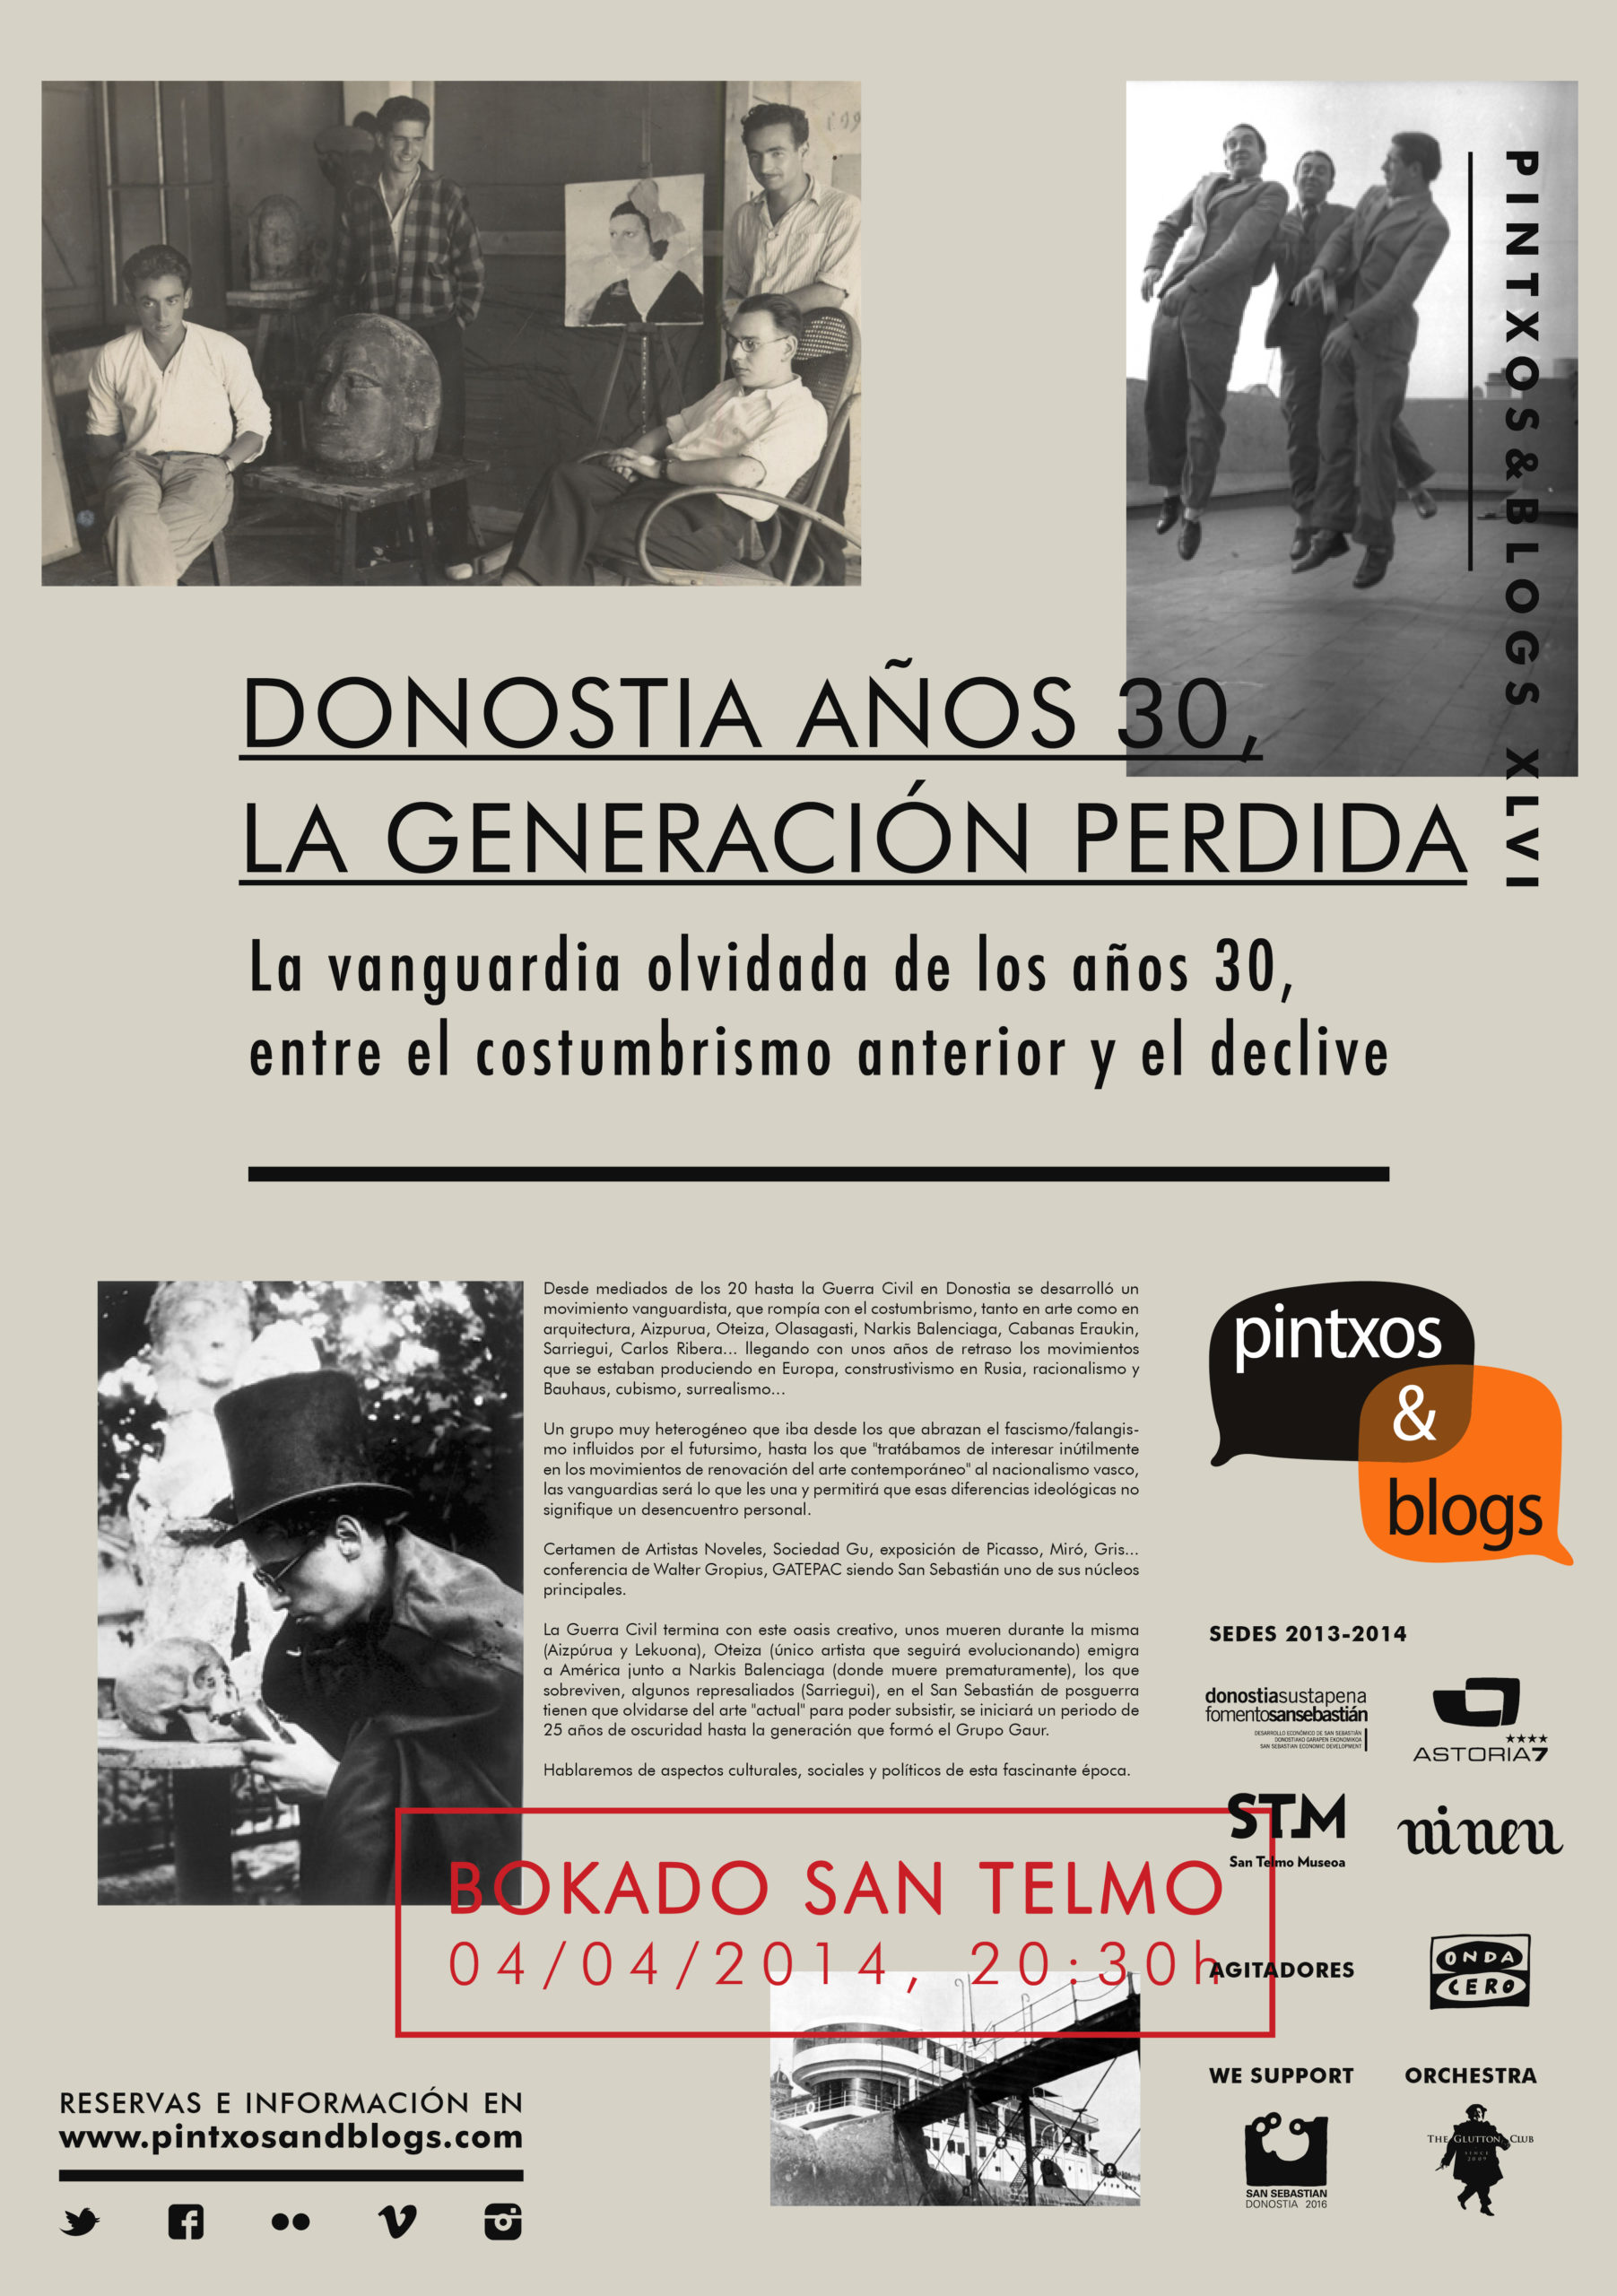 Pintxos&Blogs XLVI. Donostia años 30, la generación perdida. 2014.04.04, Bokado San Telmo